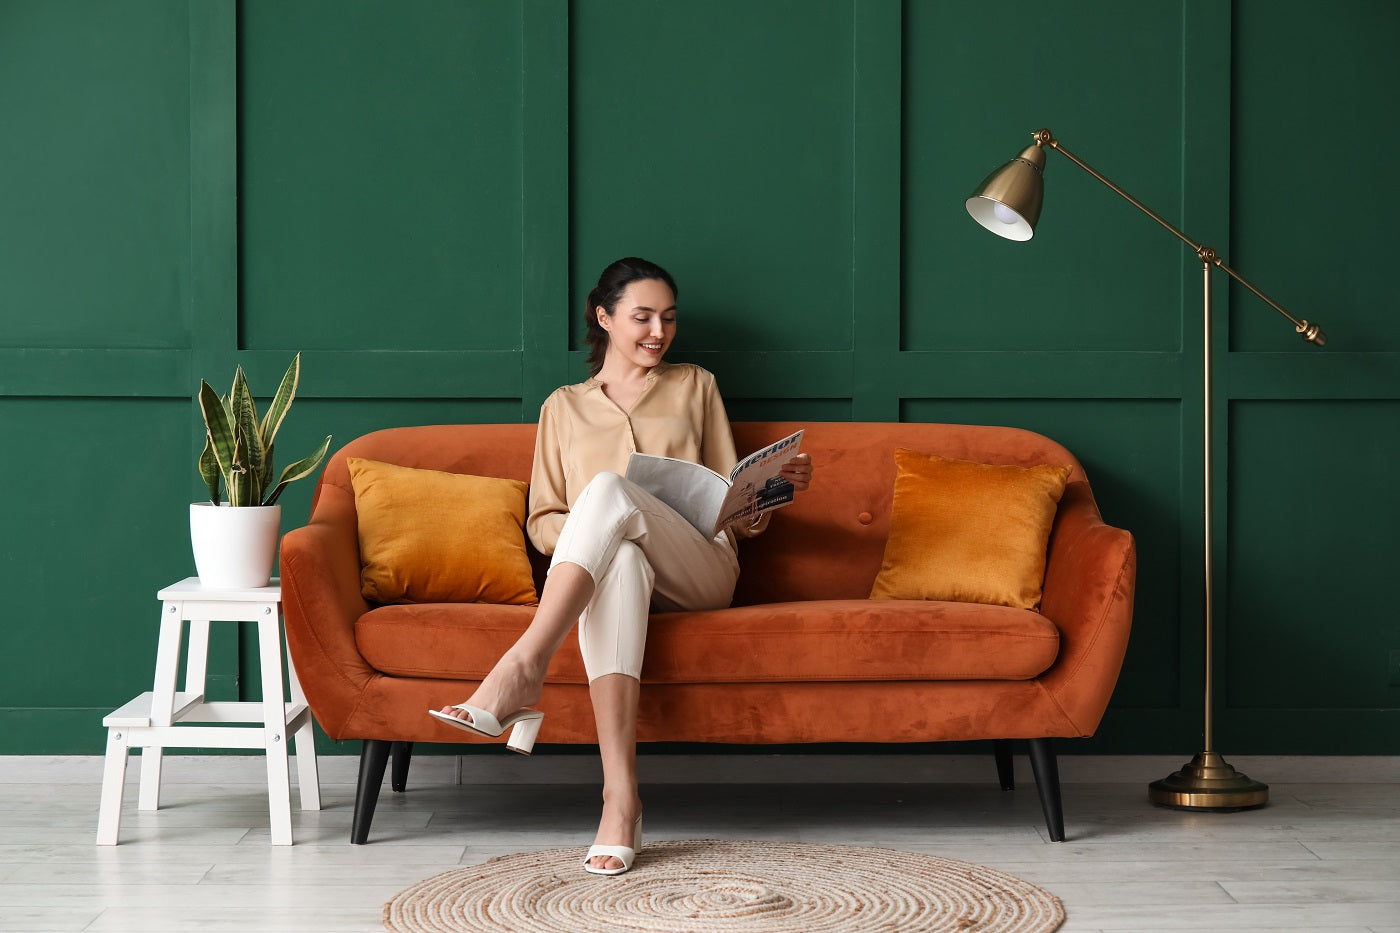 Frau liest ein Magazin auf einem orangenen Sofa vor einer grünen Wand